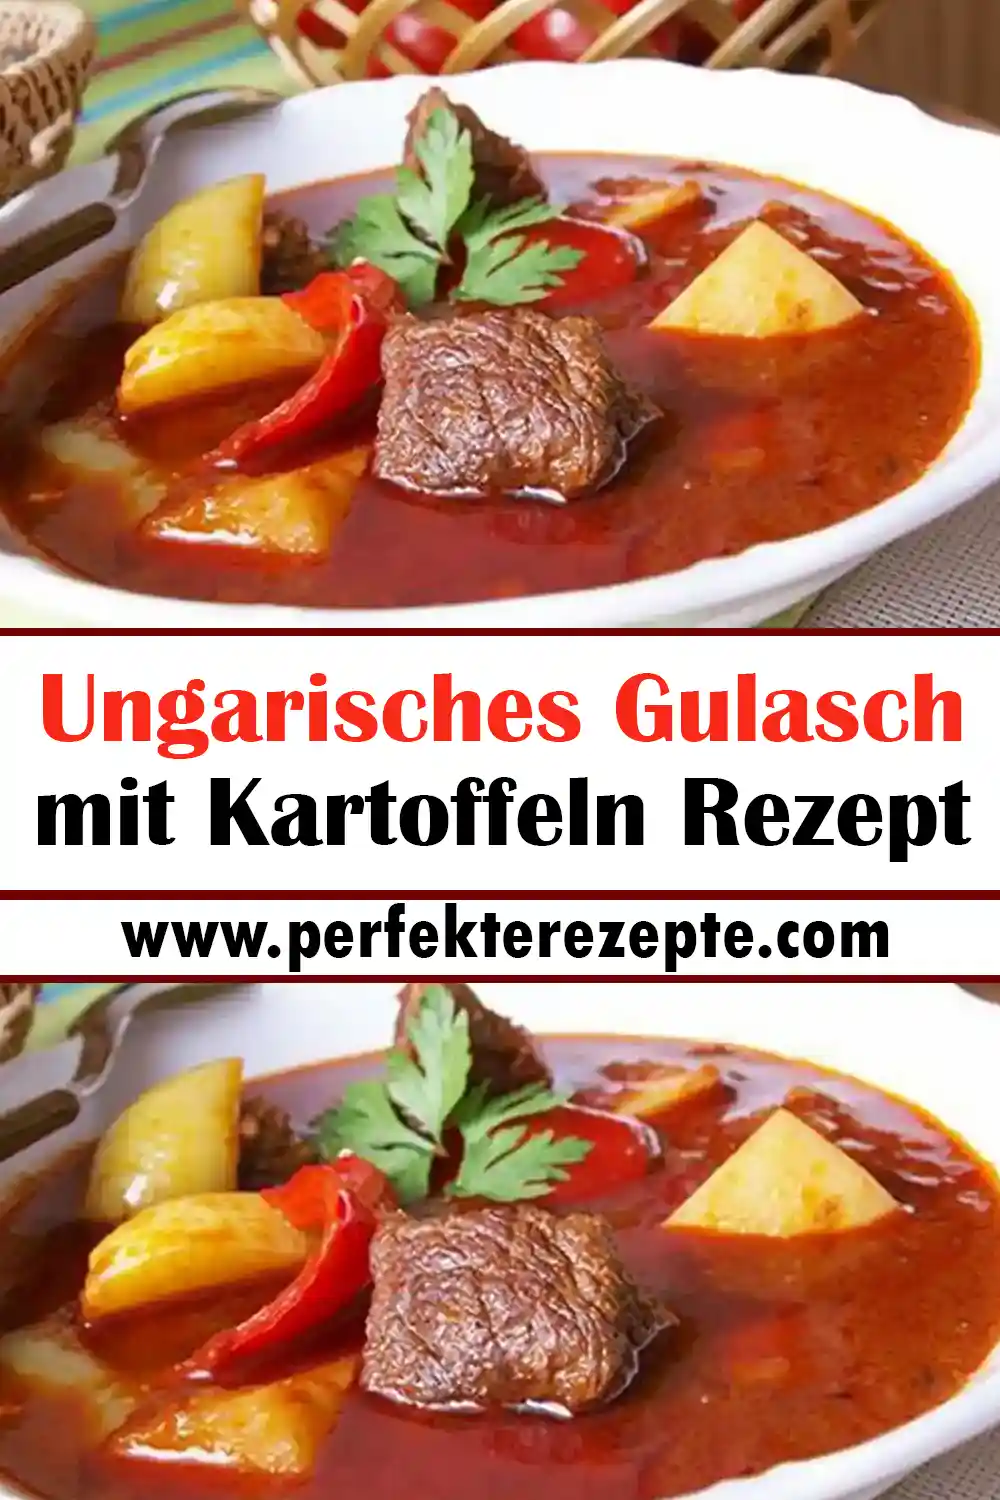 Ungarisches Gulasch mit Kartoffeln Rezept